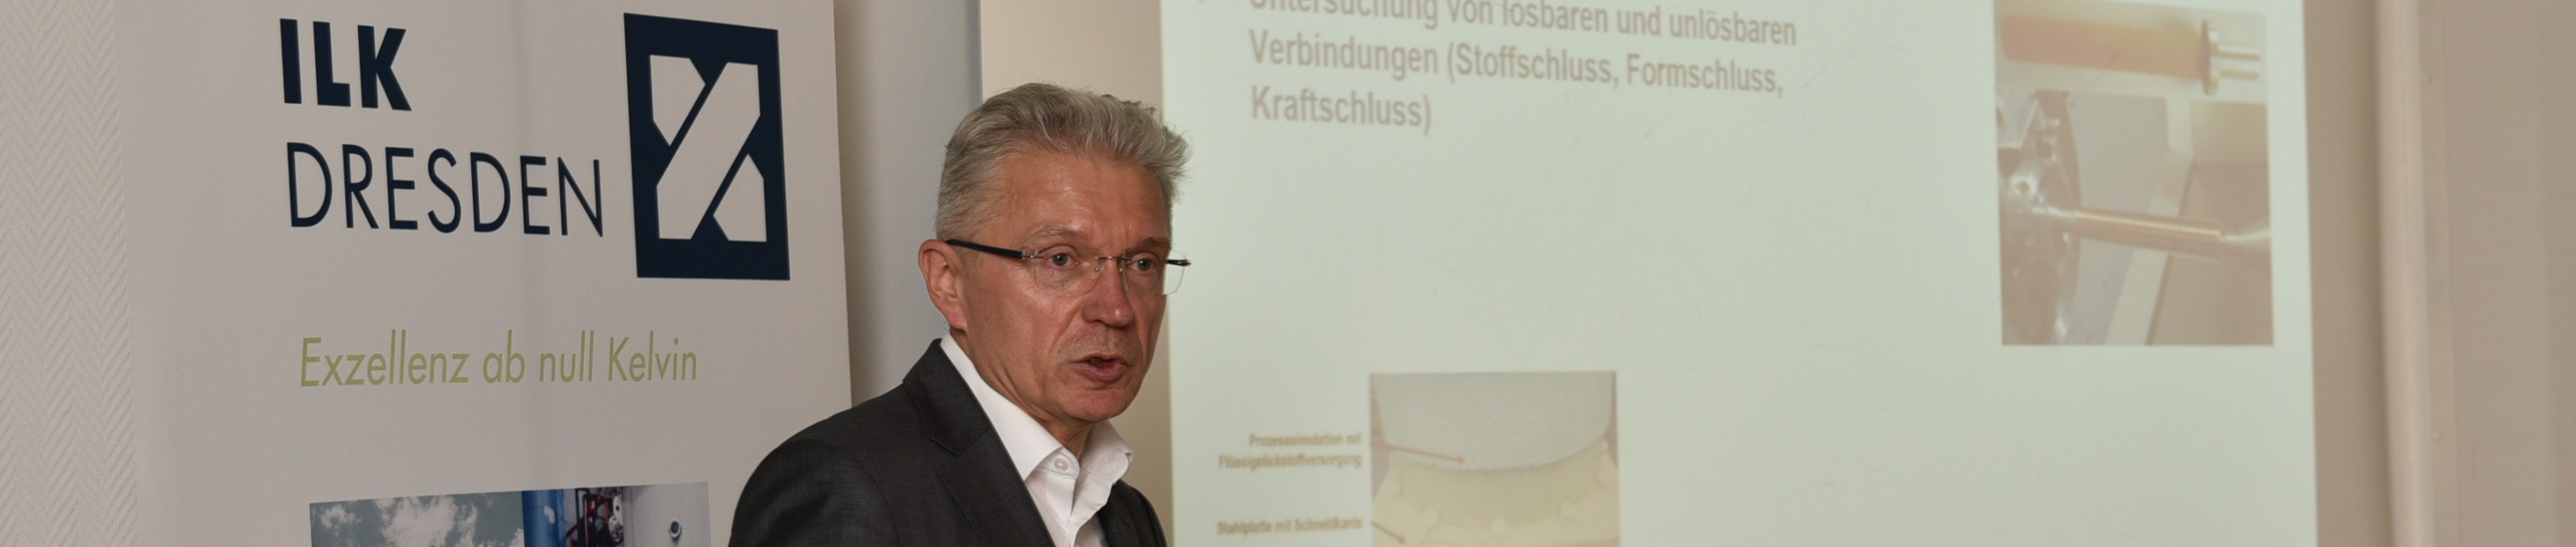 Prof. Dr. Uwe Franzke stellt das ILK Dresden vor.